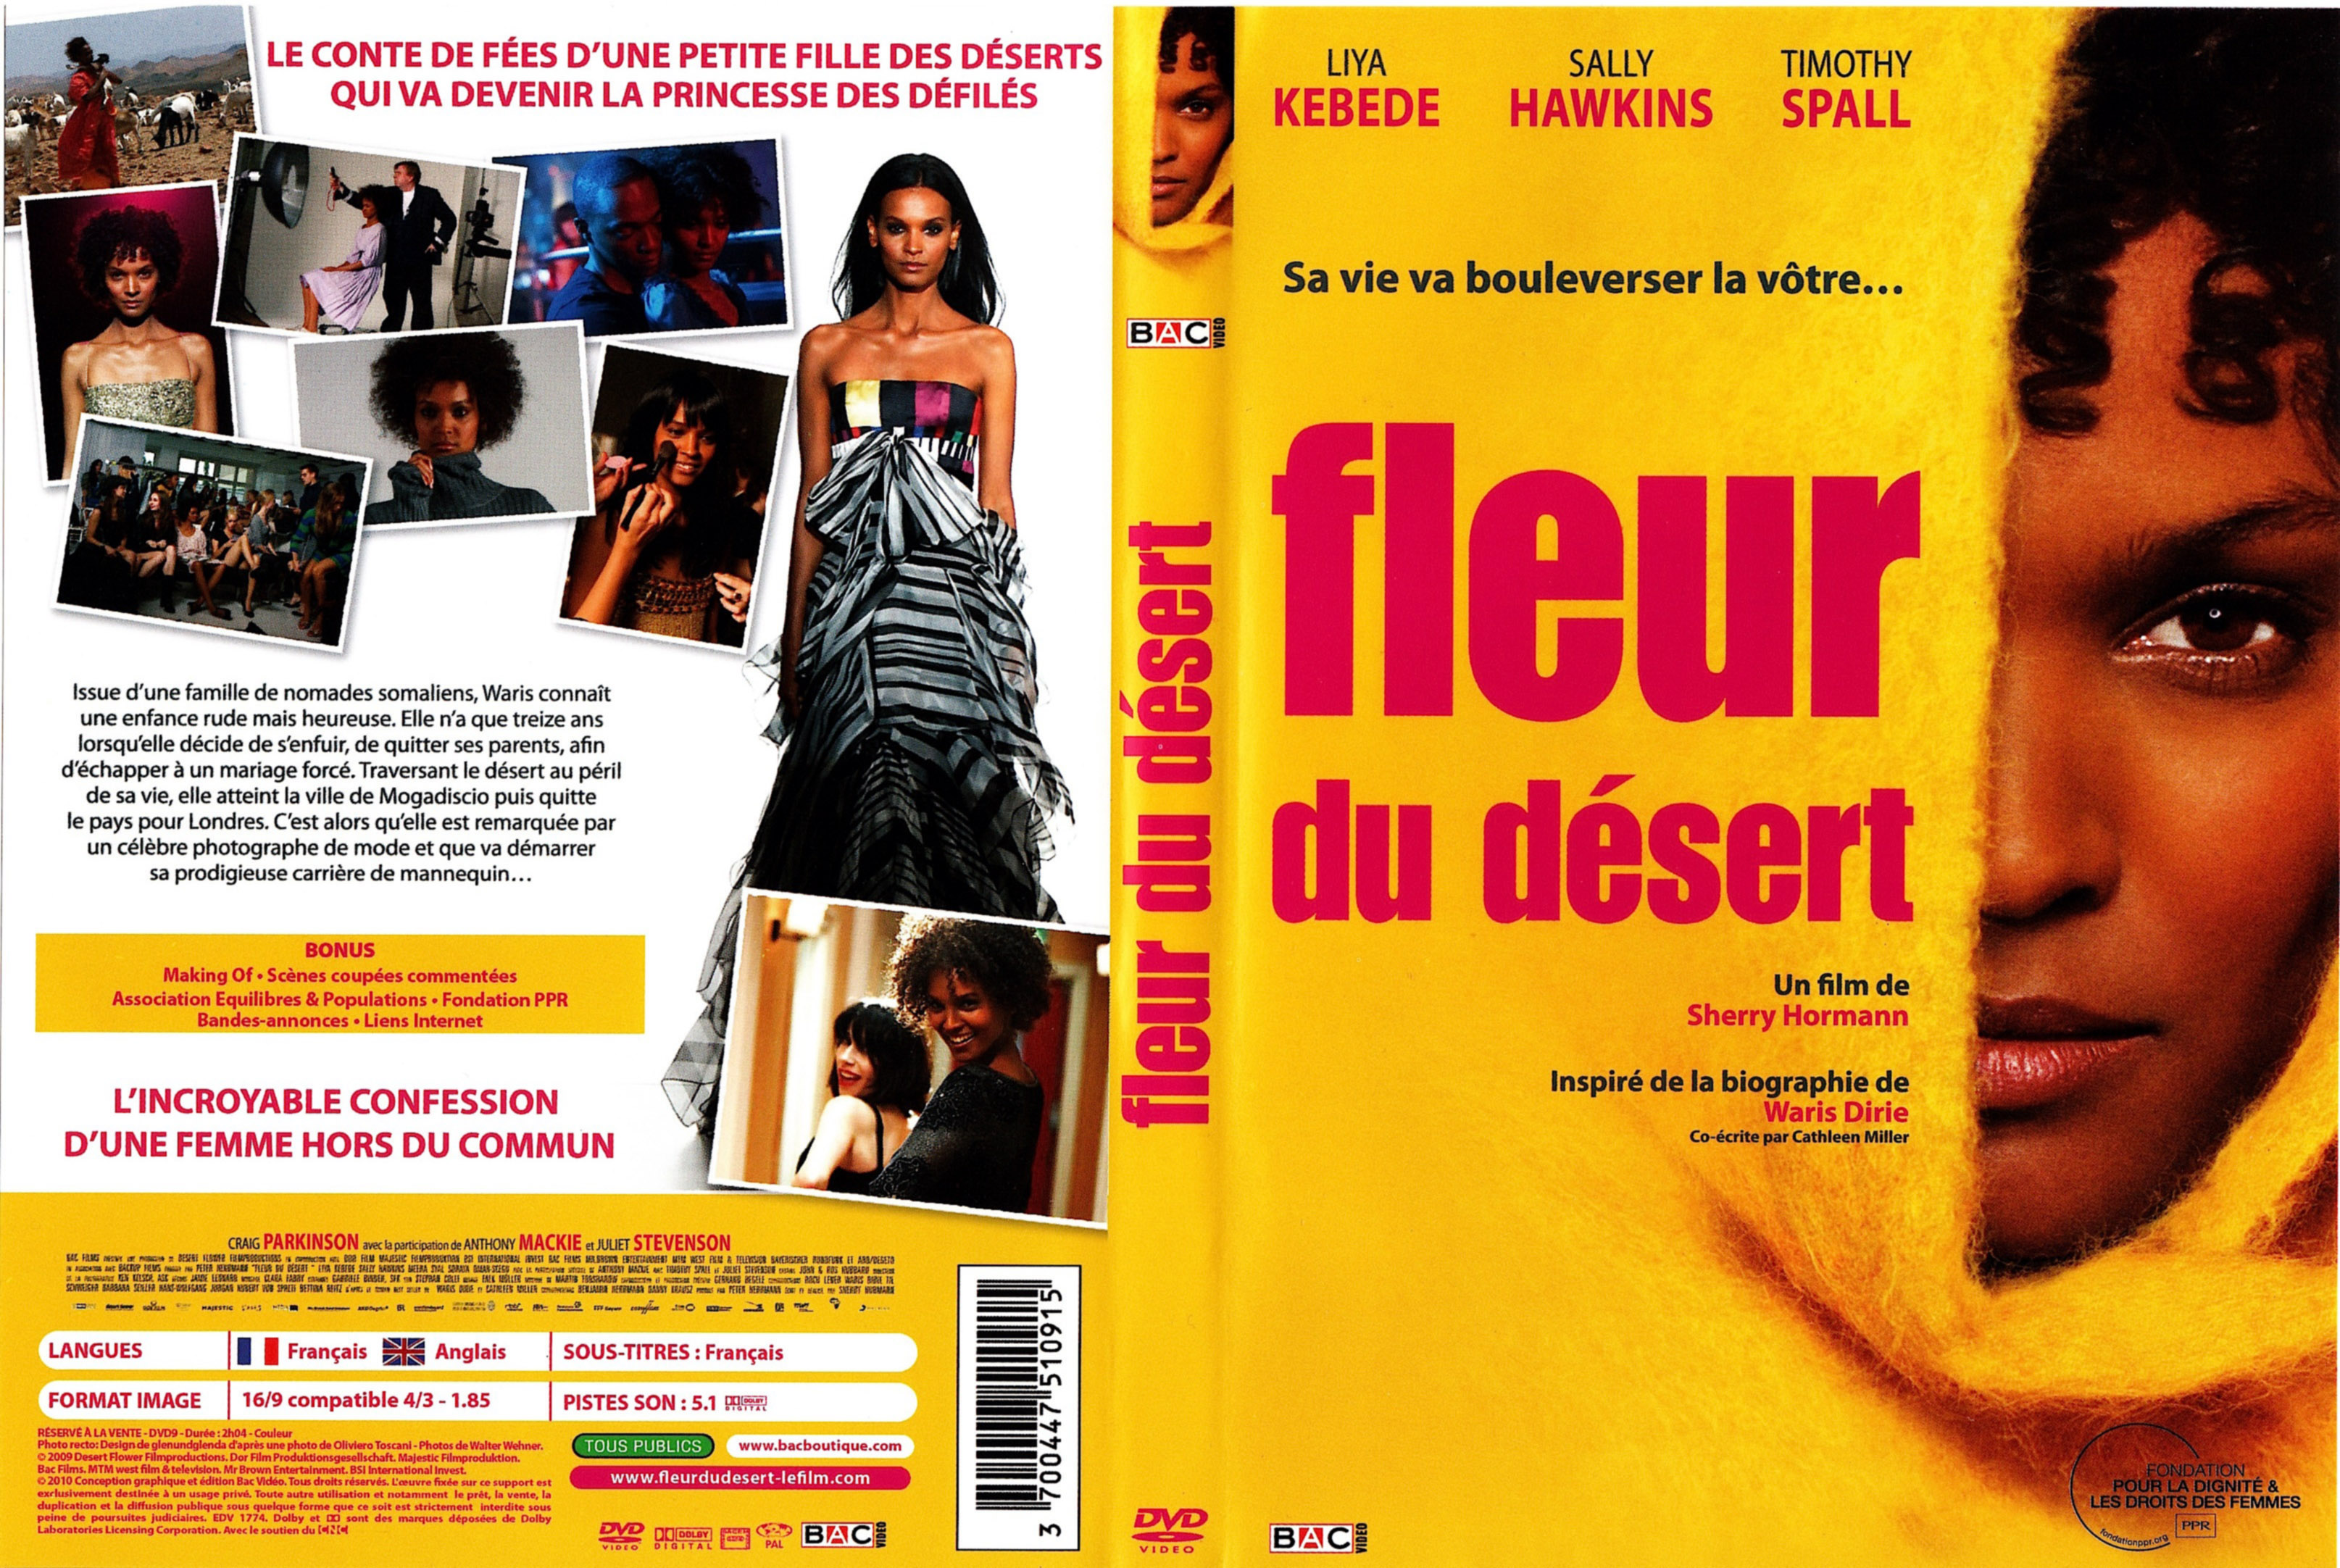 Jaquette DVD Fleur du dsert v2